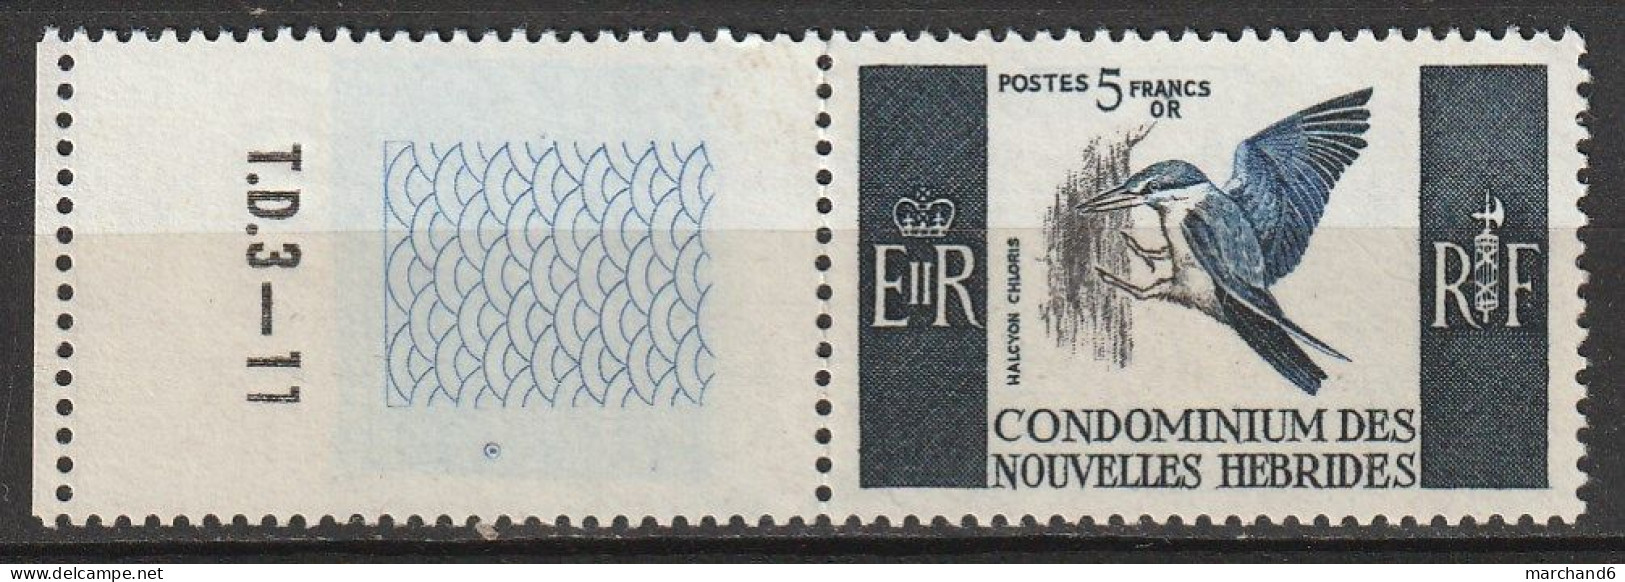 Nouvelles Hébrides Alcyon Chloris Francaise1967  N°255 Neuf** Bord De Feuille - Unused Stamps